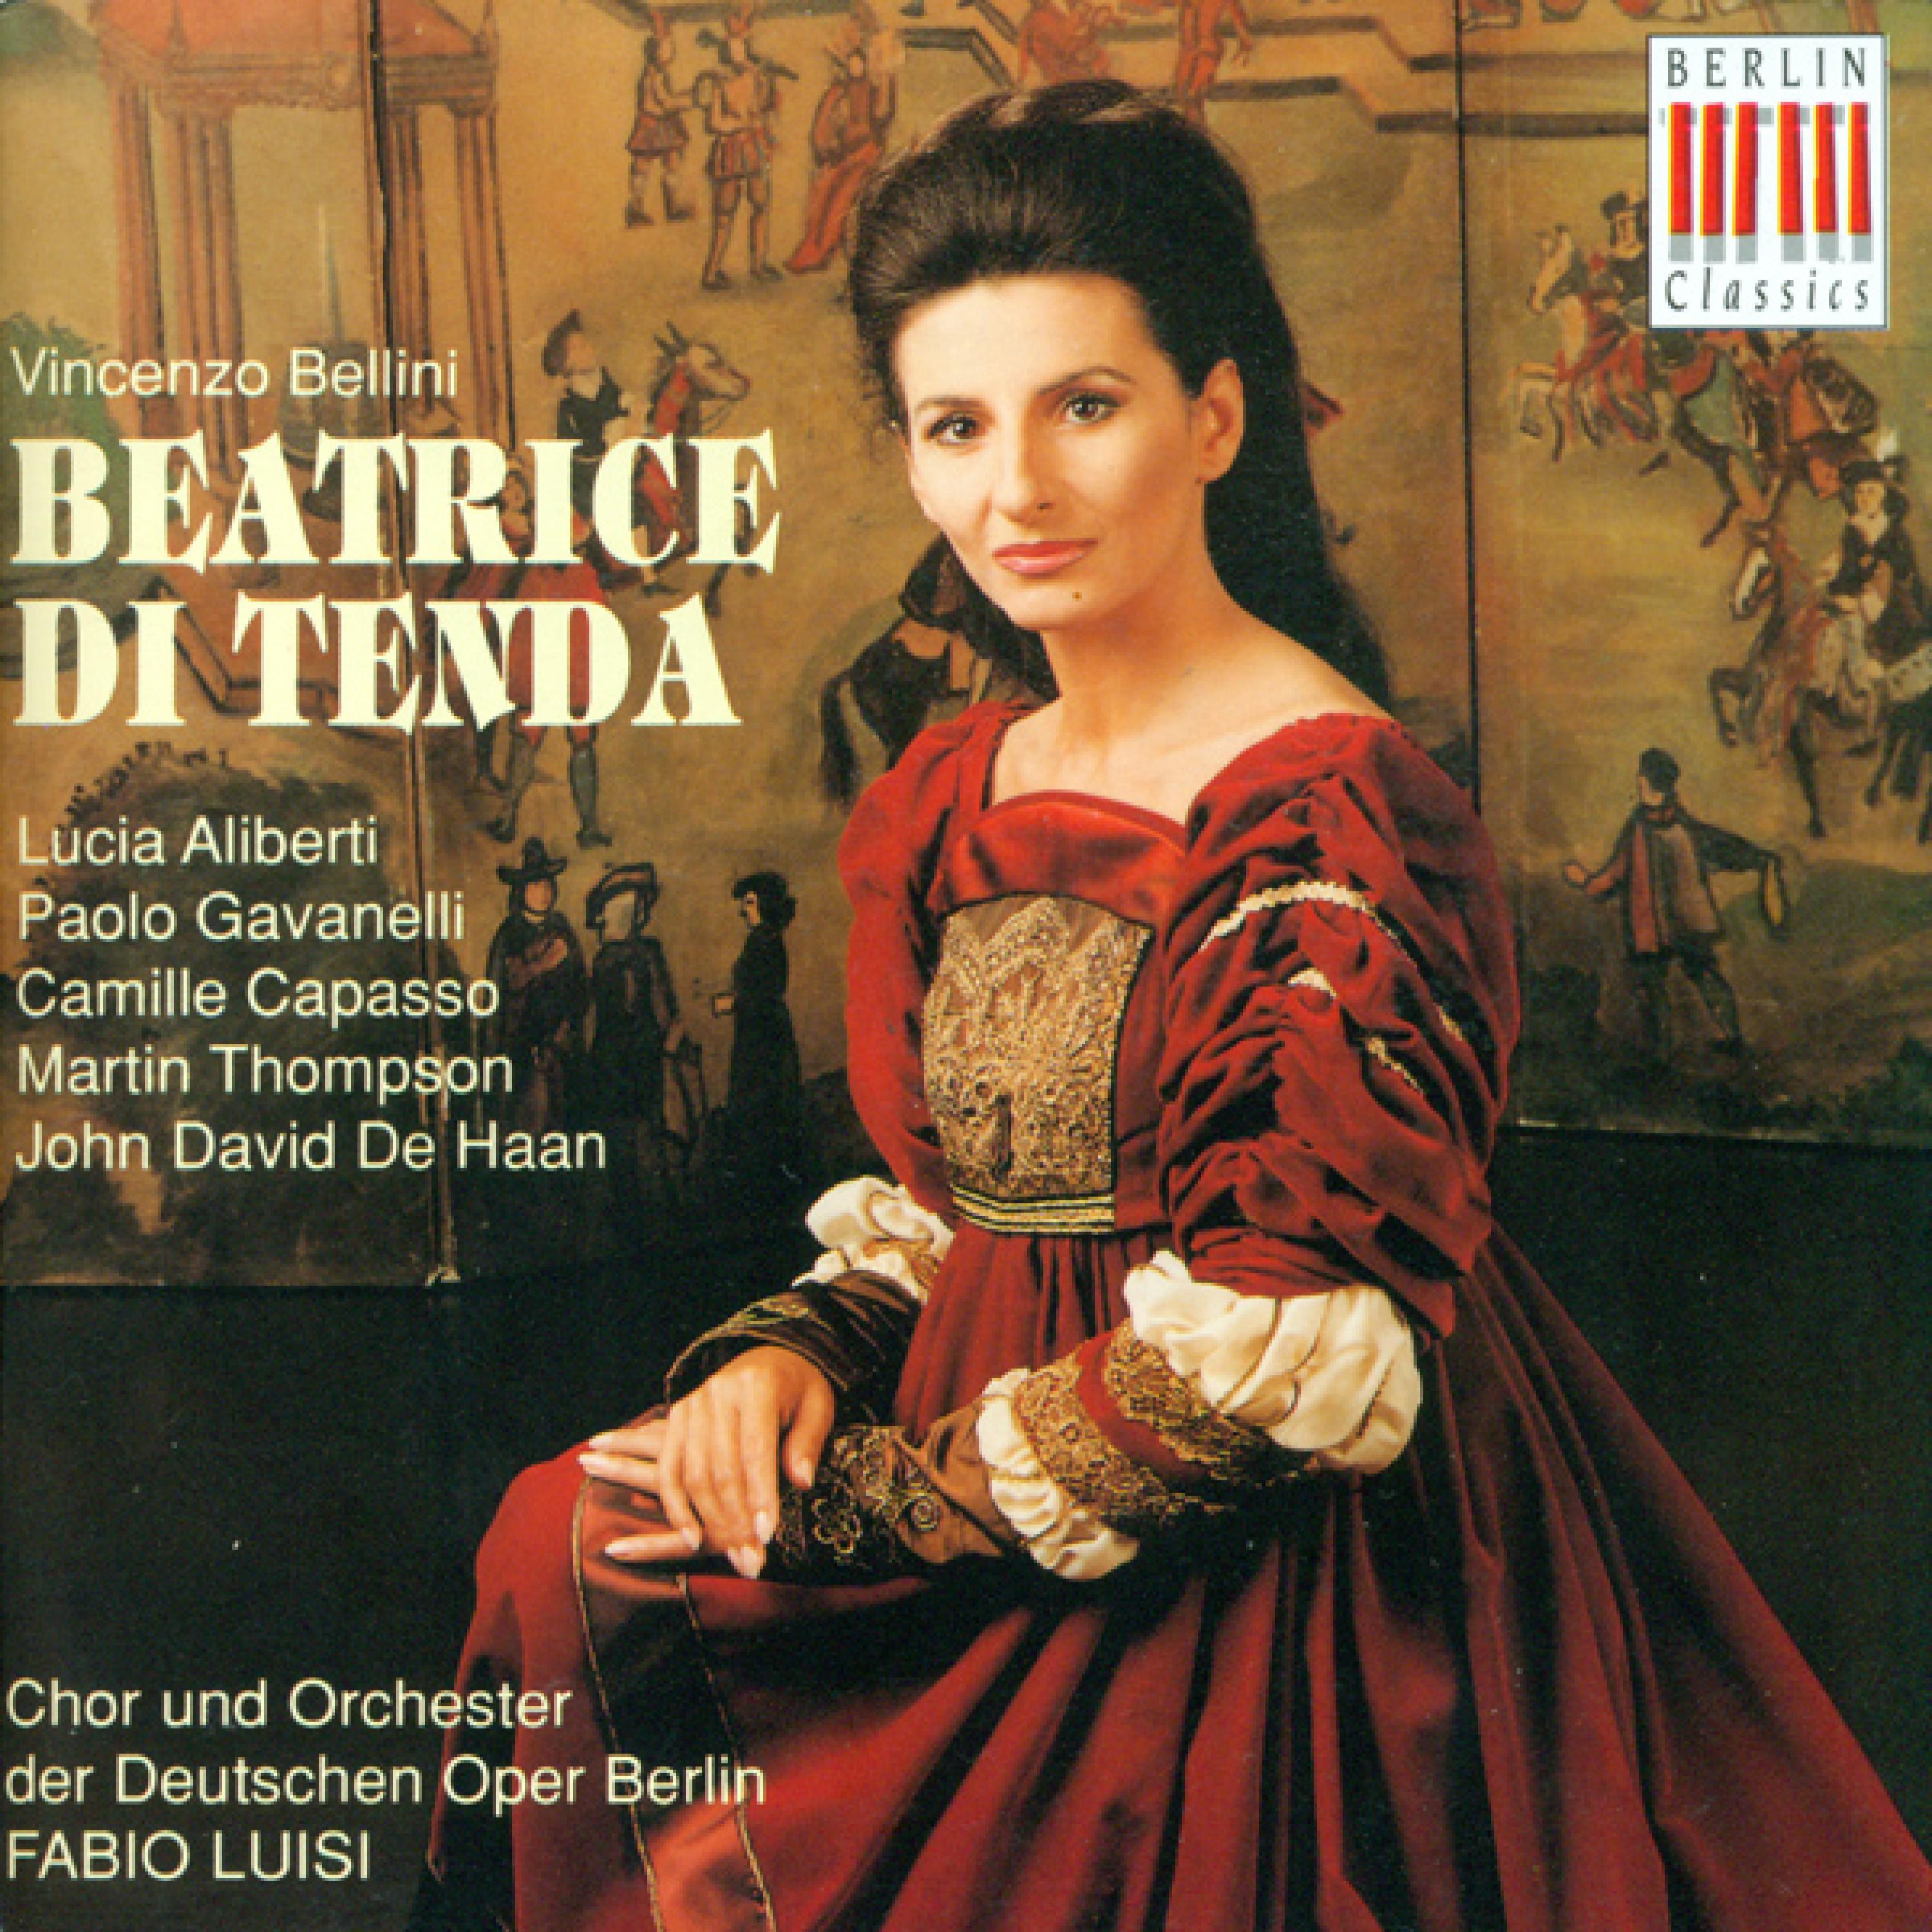 Beatrice di Tenda: Act I Scenes 5-6: Respiro io qui (Beatrice)